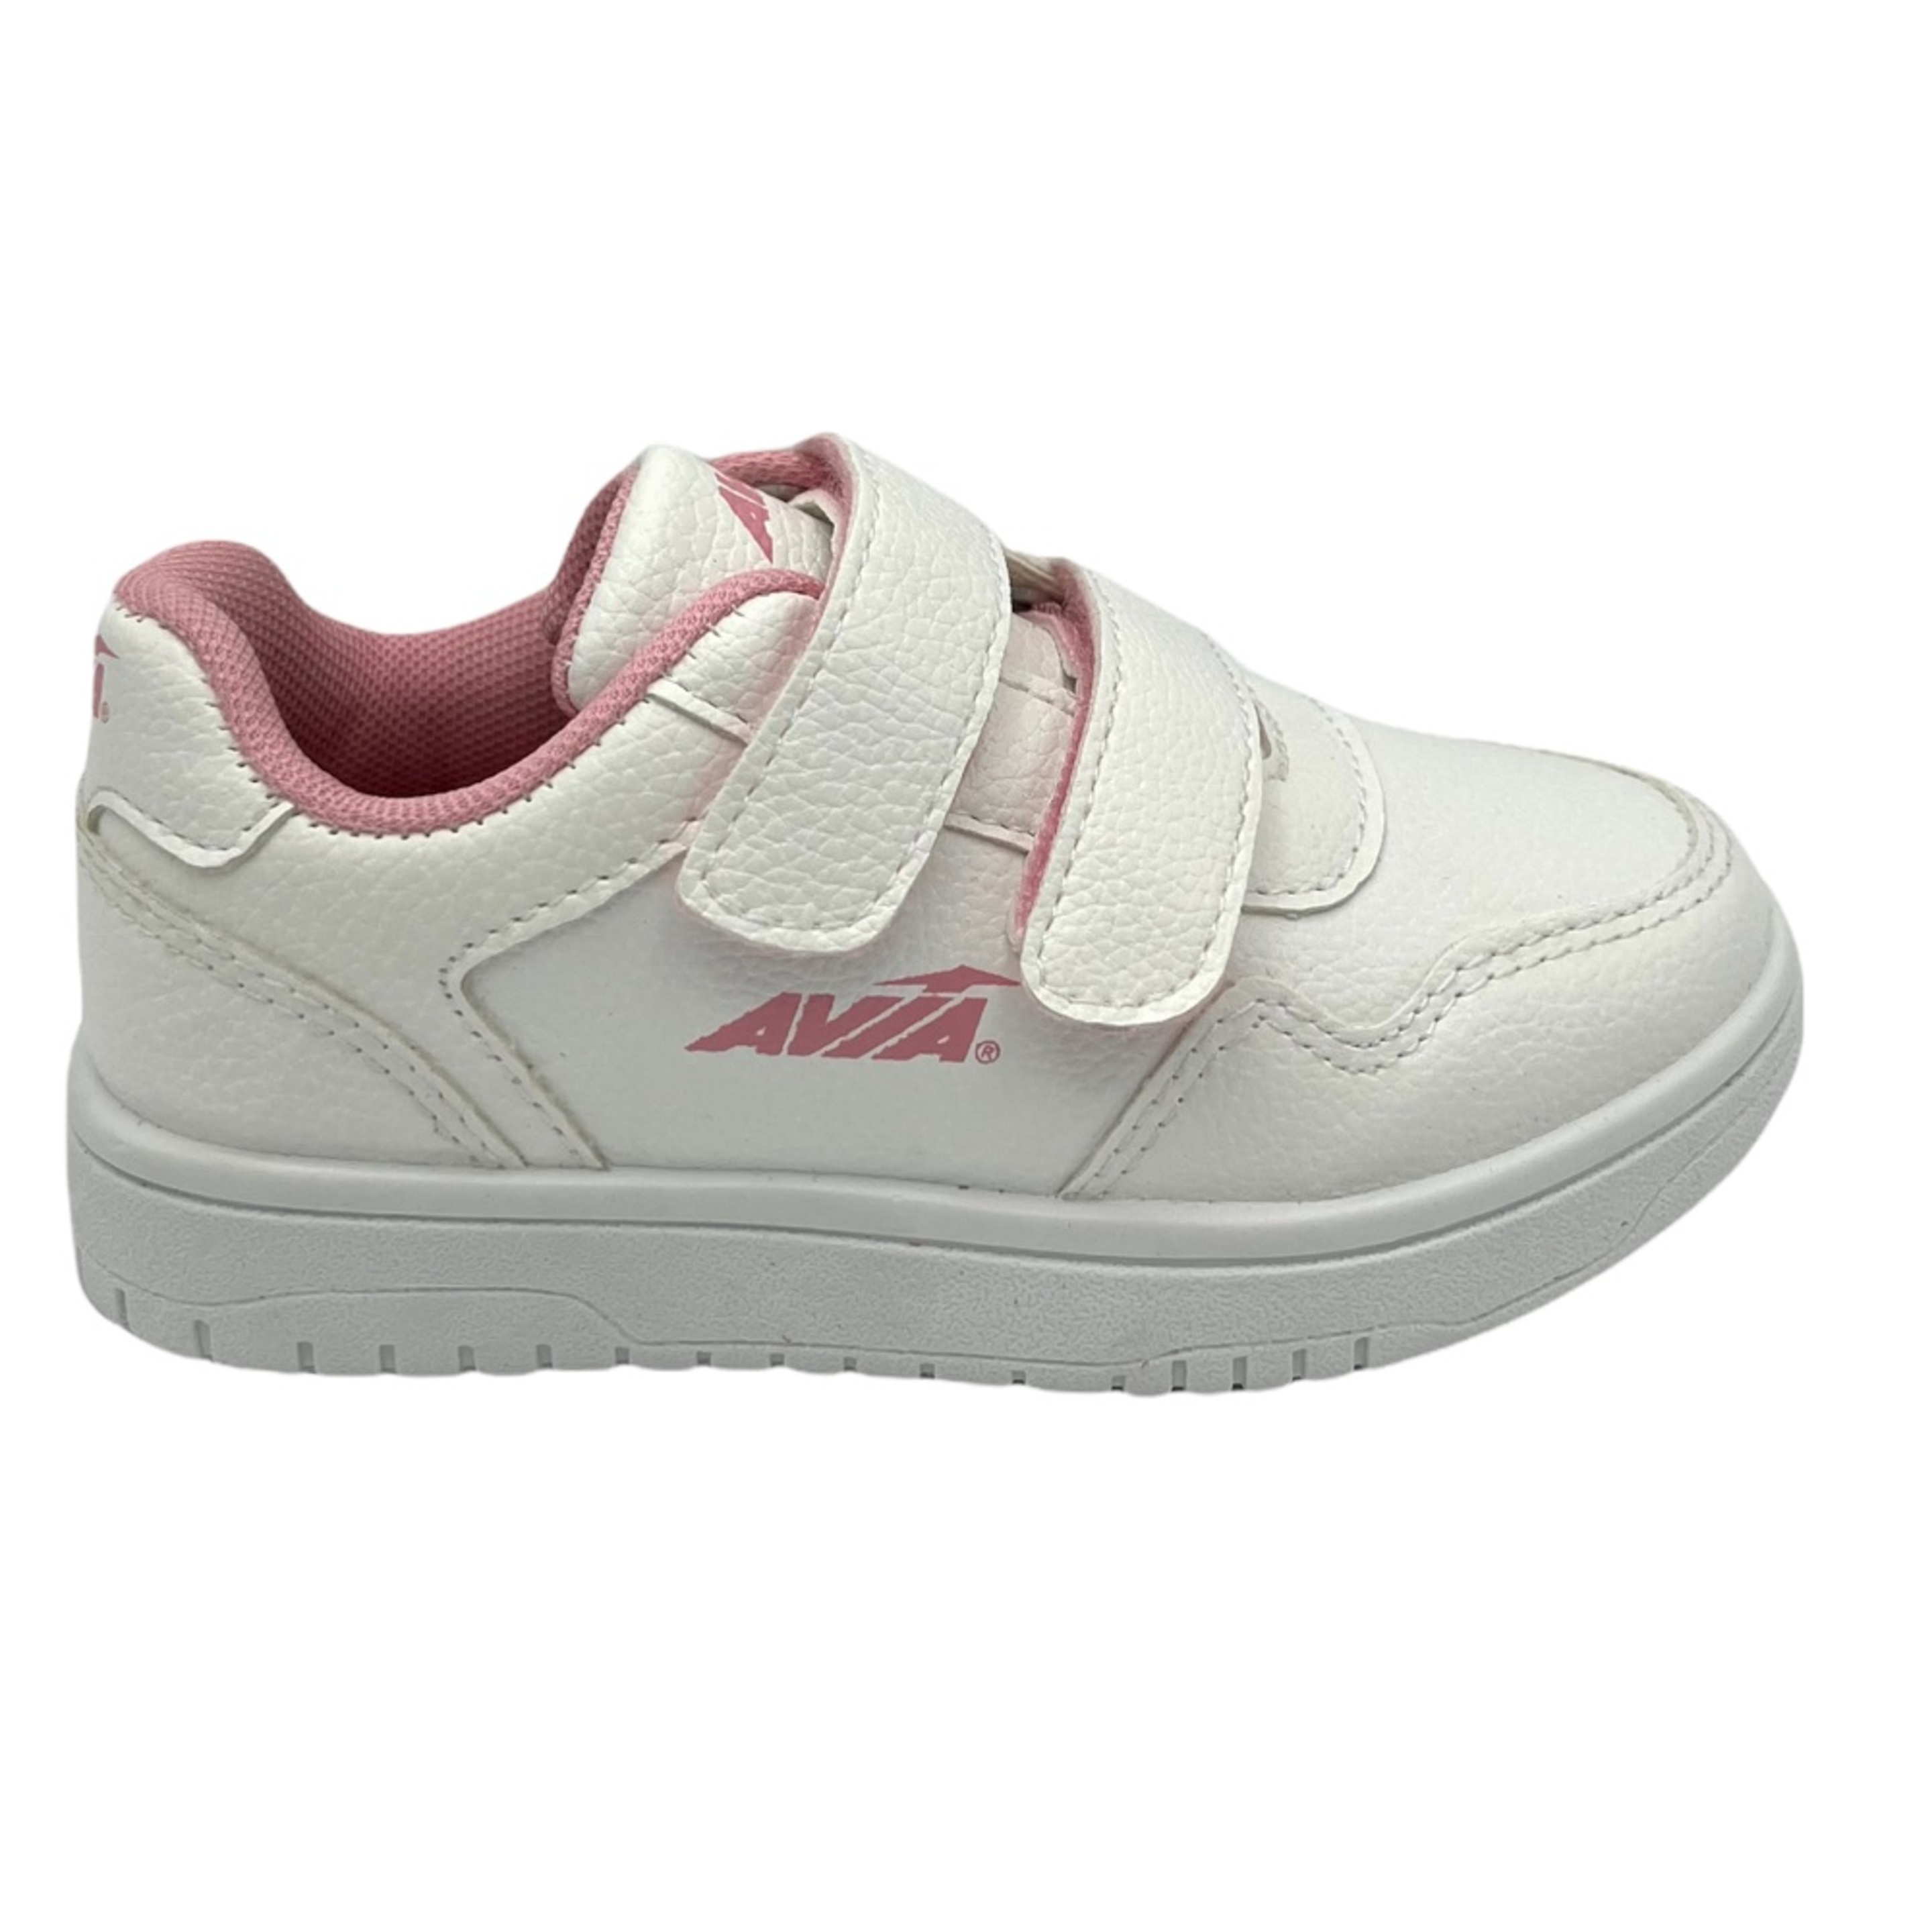 Zapatillas Avia Basico Kids - blanco-rosa - 